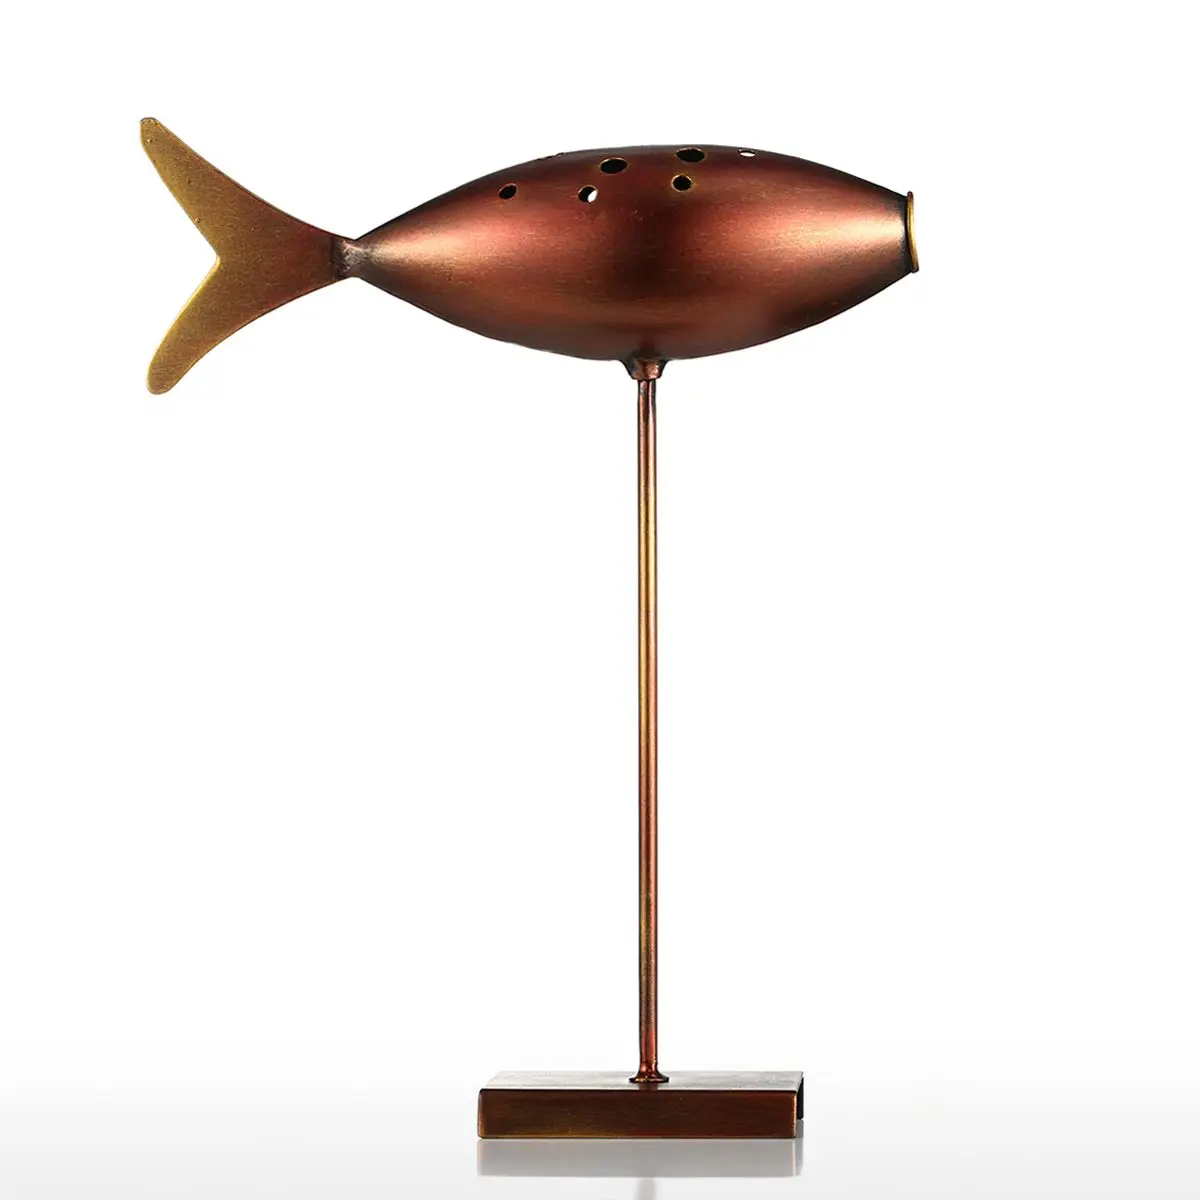 Tooarts подводная лодка фигурка рыбы 3 стиля металлическая фигурка пост Современная Скульптура искусство рыба ремесло подарок украшение дома аксессуары